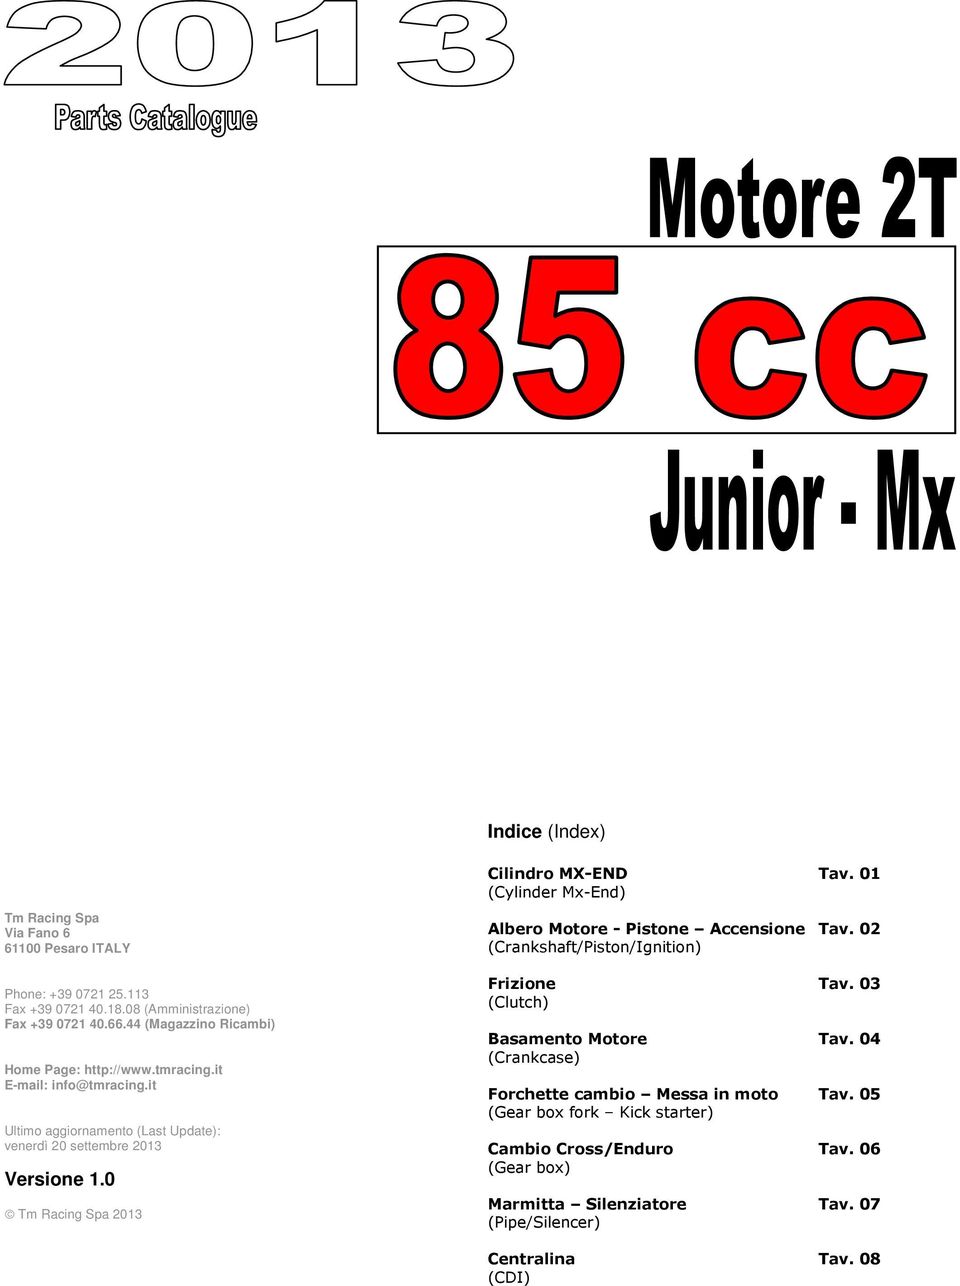 0 Tm Racing Spa 2013 Cilindro MX-END (Cylinder Mx-End) Albero Motore - Pistone Accensione (Crankshaft/Piston/Ignition) Frizione (Clutch) Basamento Motore (Crankcase)